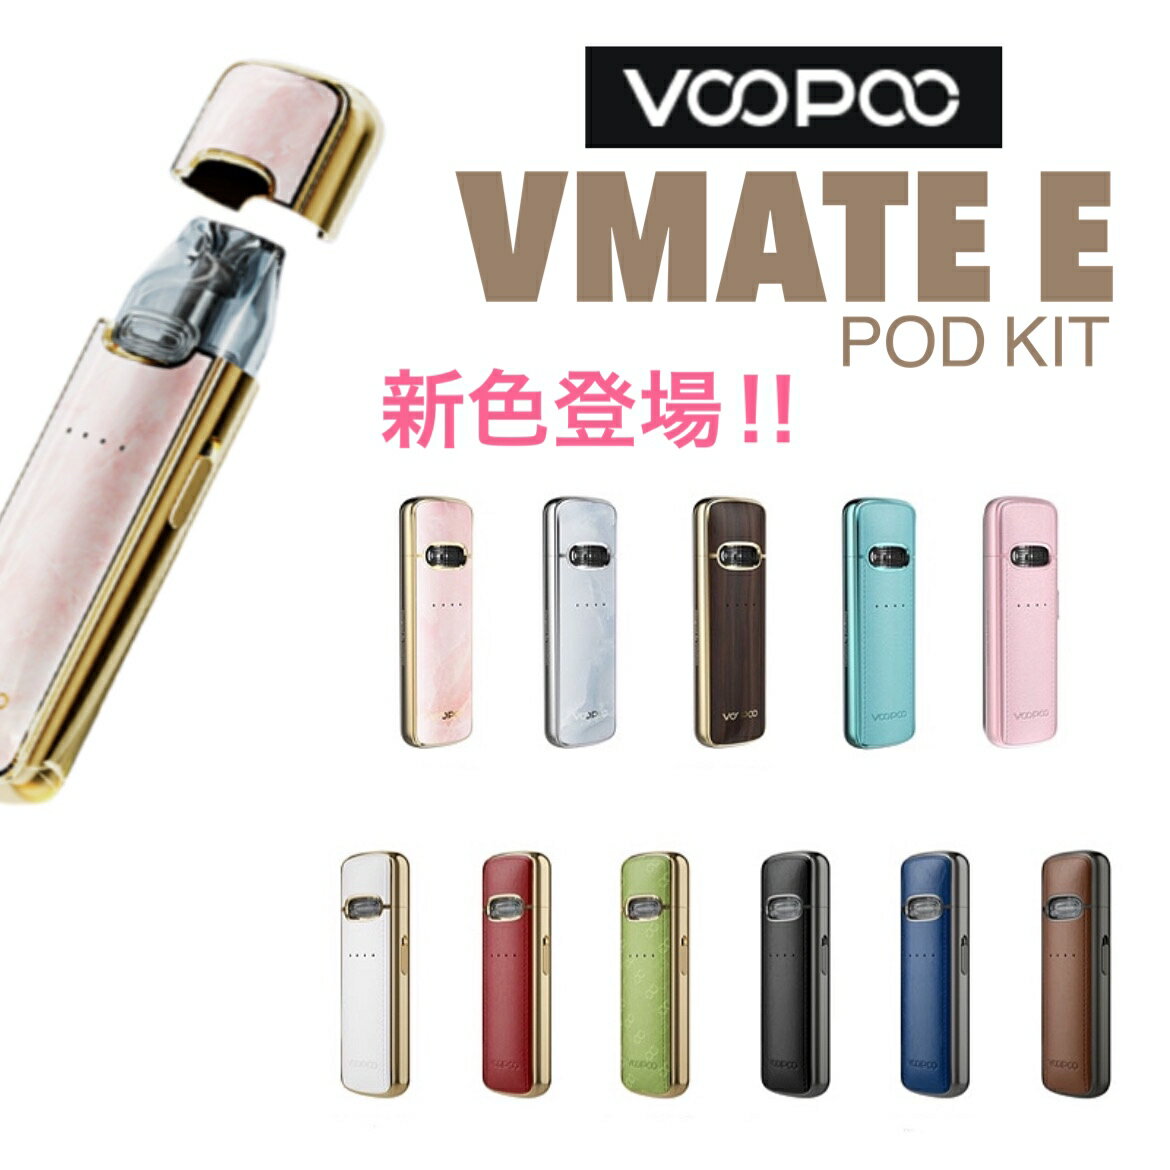 【送料無料】VOOPOO VMATE E Pod Kit ブープー スターターキット ポッド 電子タバコ vape おしゃれ キャップ付き お手軽 簡単 初心者 おすすめ